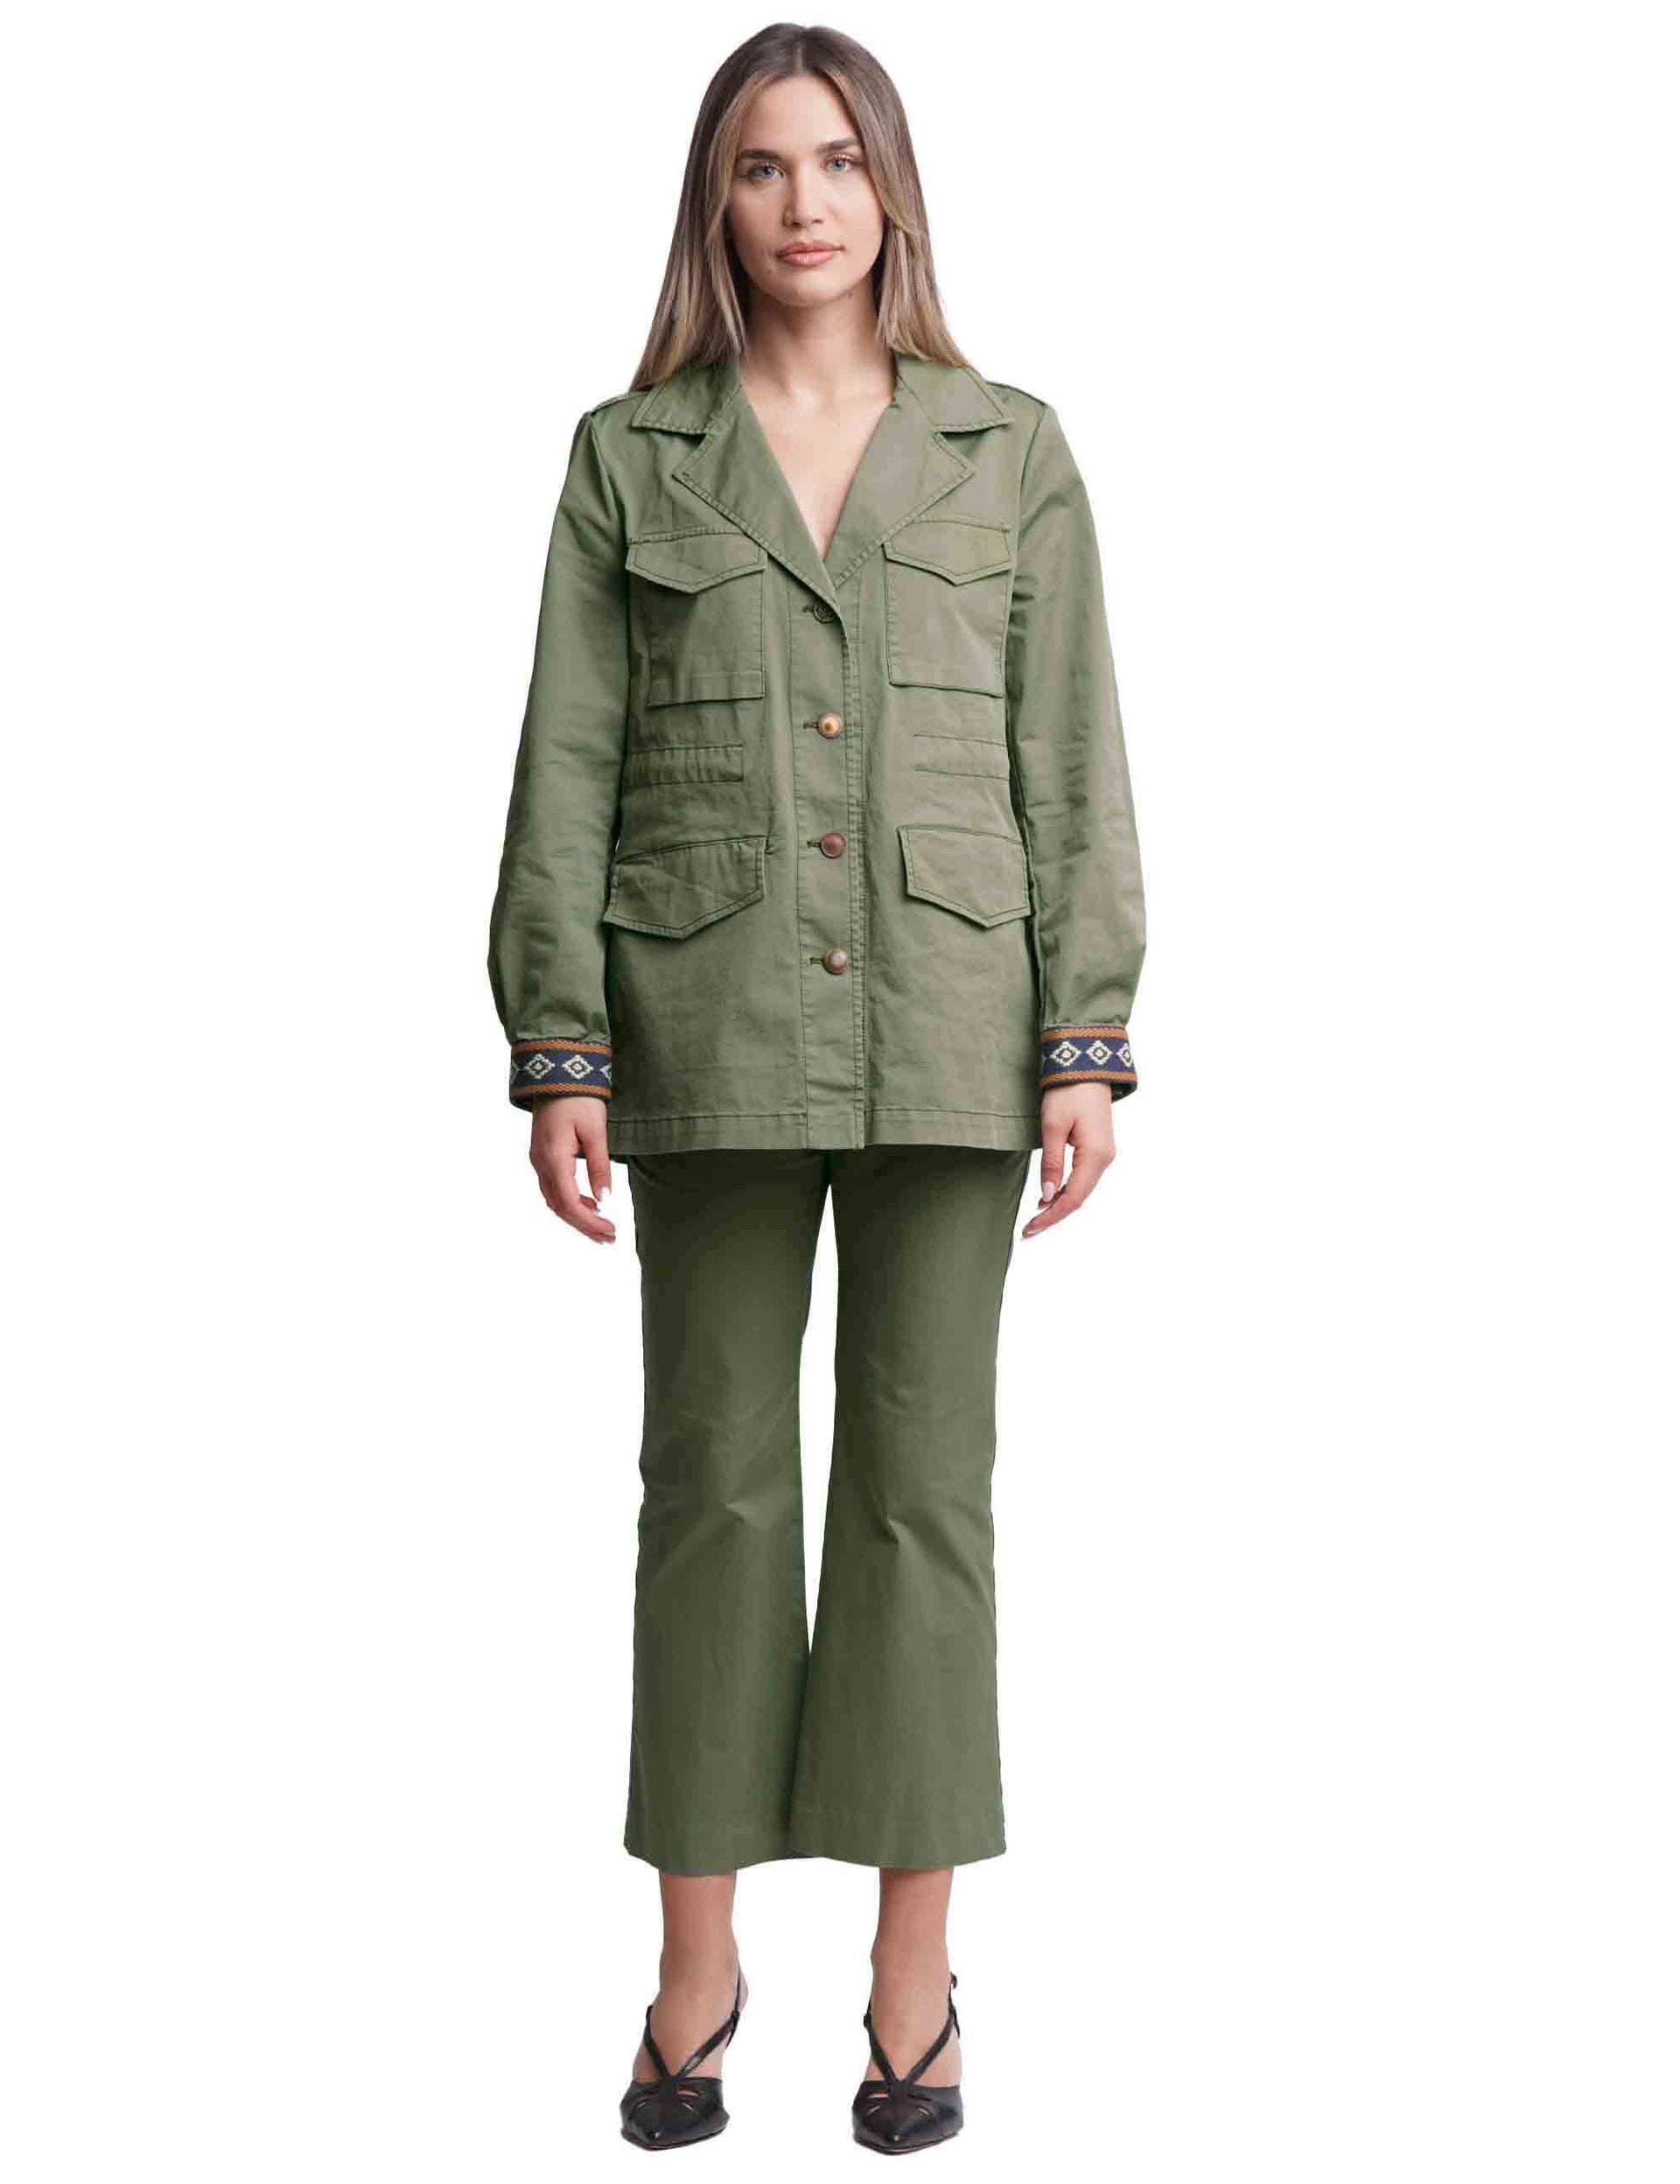 Precious women's safari jackets in green cotton